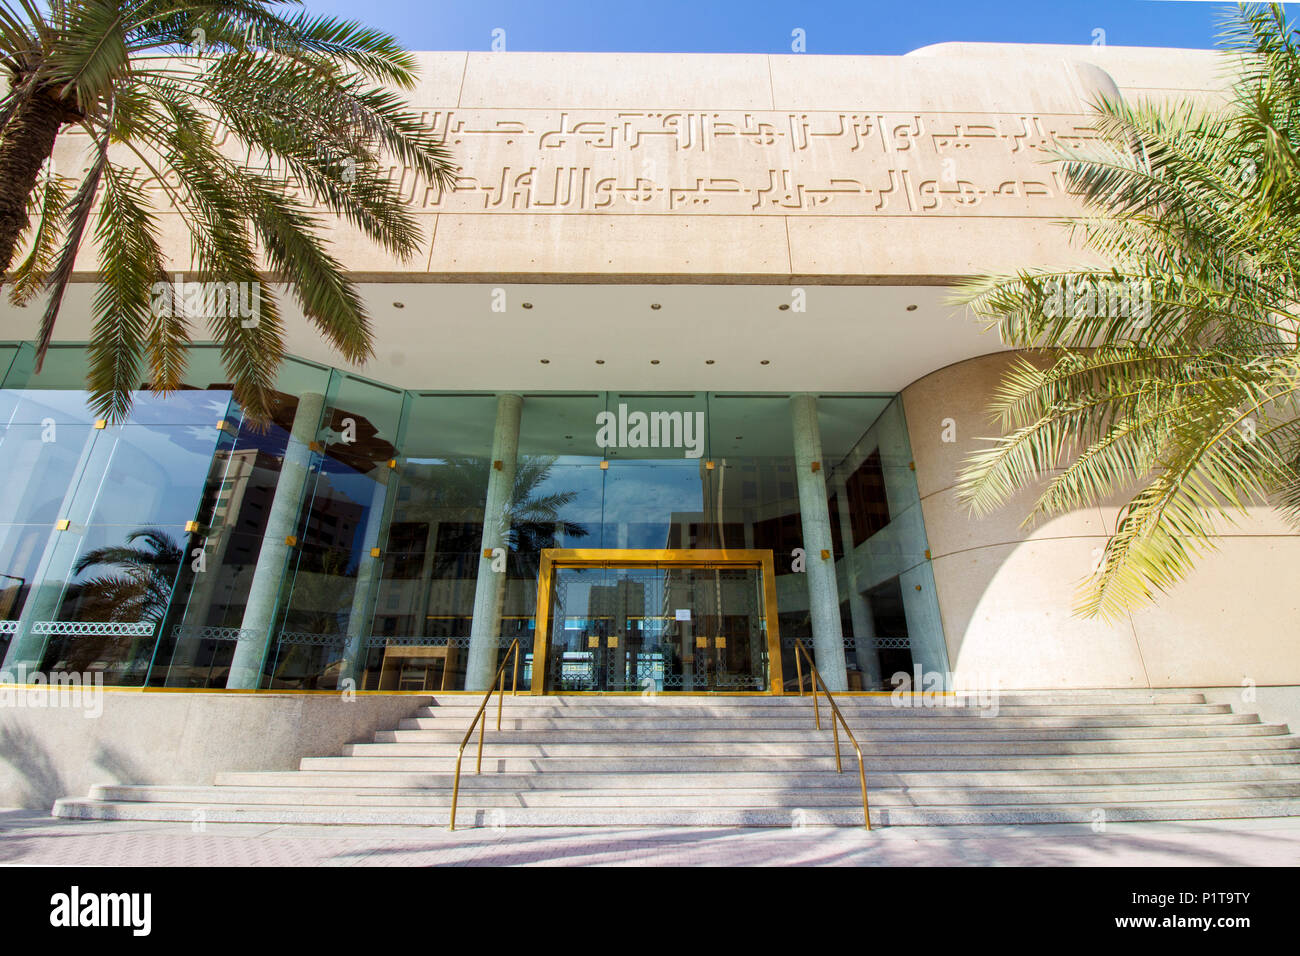 La vue avant de Beit Al Qur'an - un musée des arts de l'Islam et du Coran situé dans la ville de Manama, Bahreïn Banque D'Images